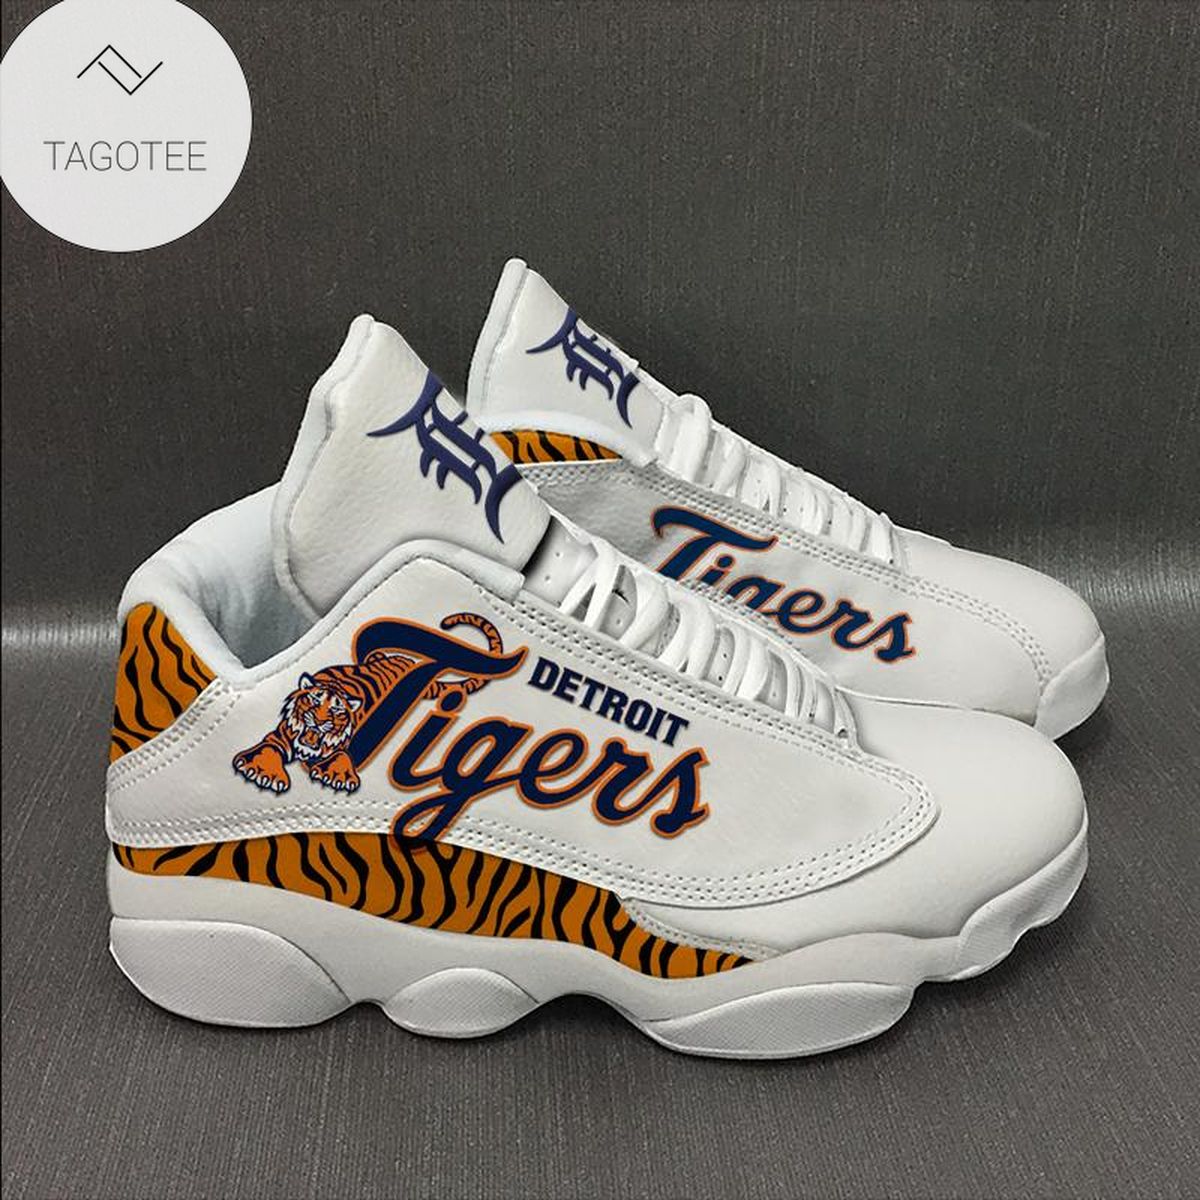 Detroit Tigers Sneakers Air Jordan 13 Shoes